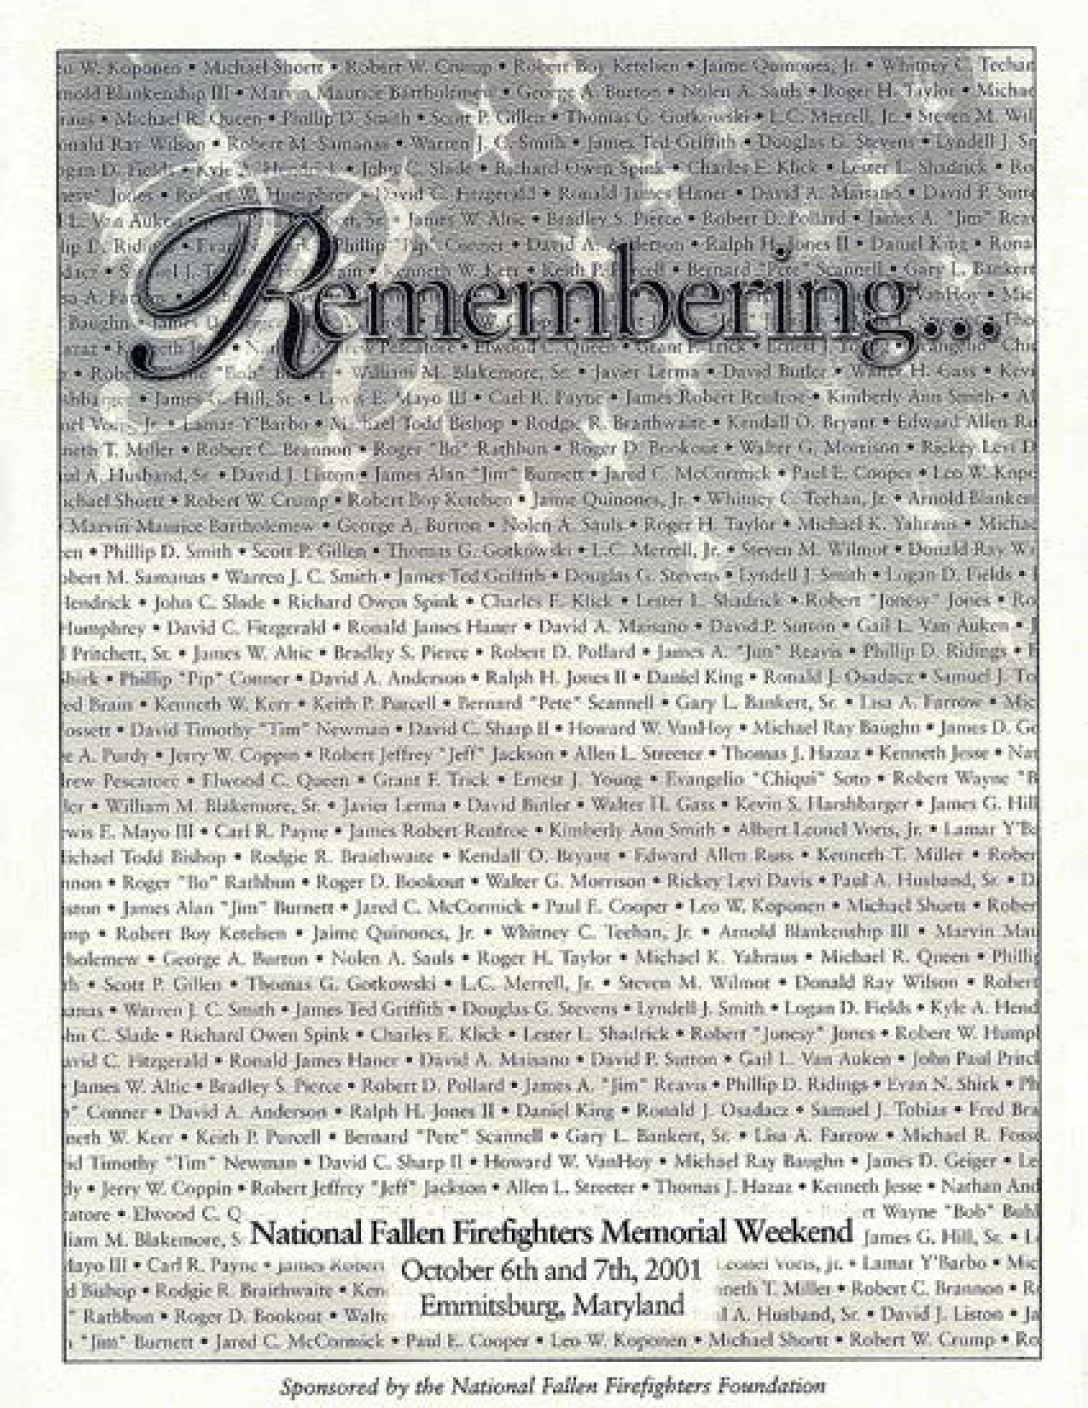 2001 Remembrance Book